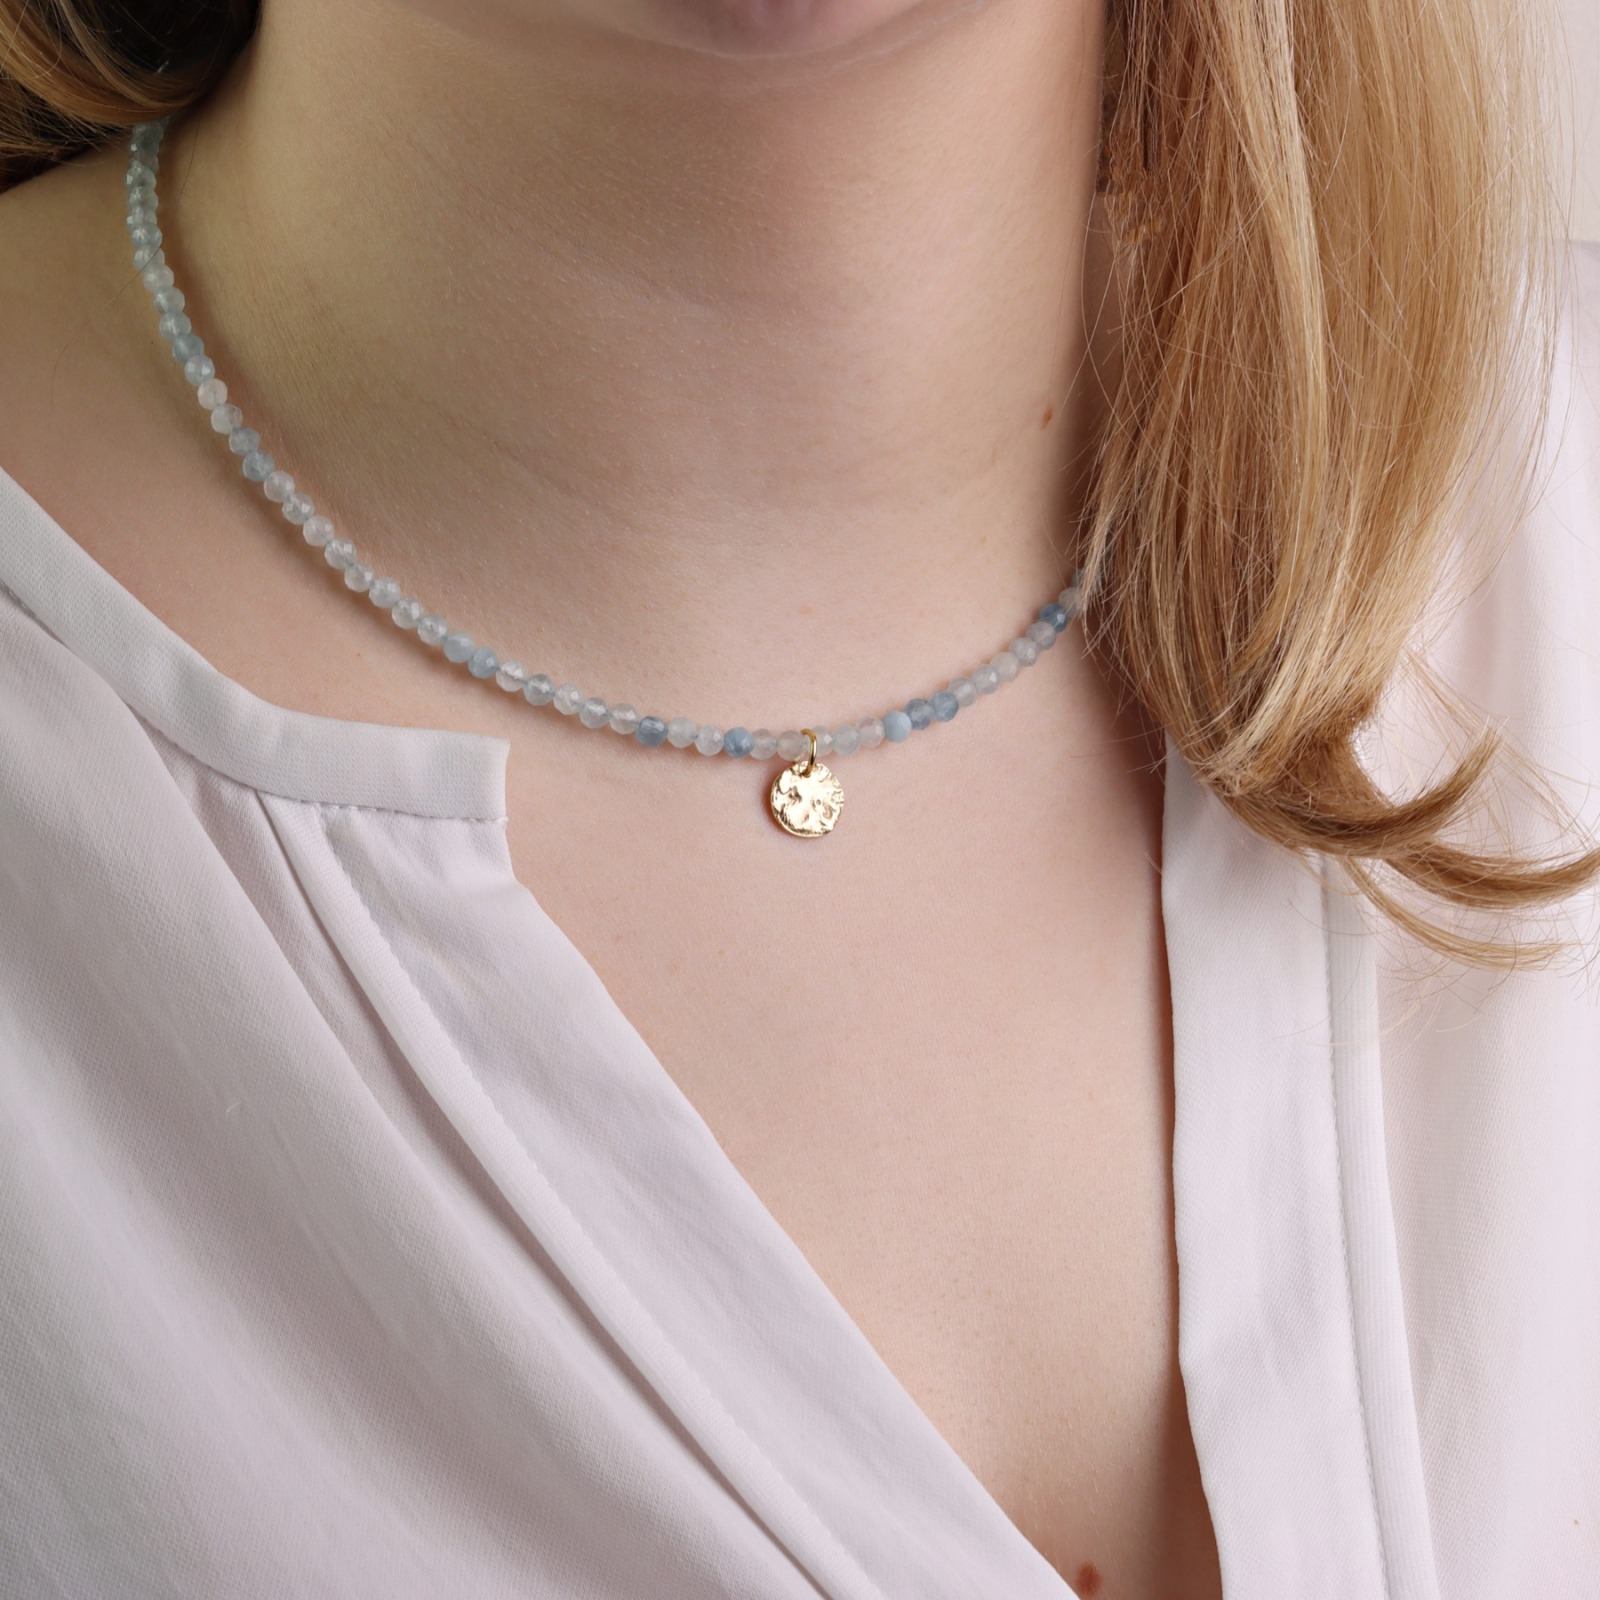 Feine Edelstein-Halskette Damen aus echtem Aquamarin mit Anhänger Plättchen, schönes Geschenk